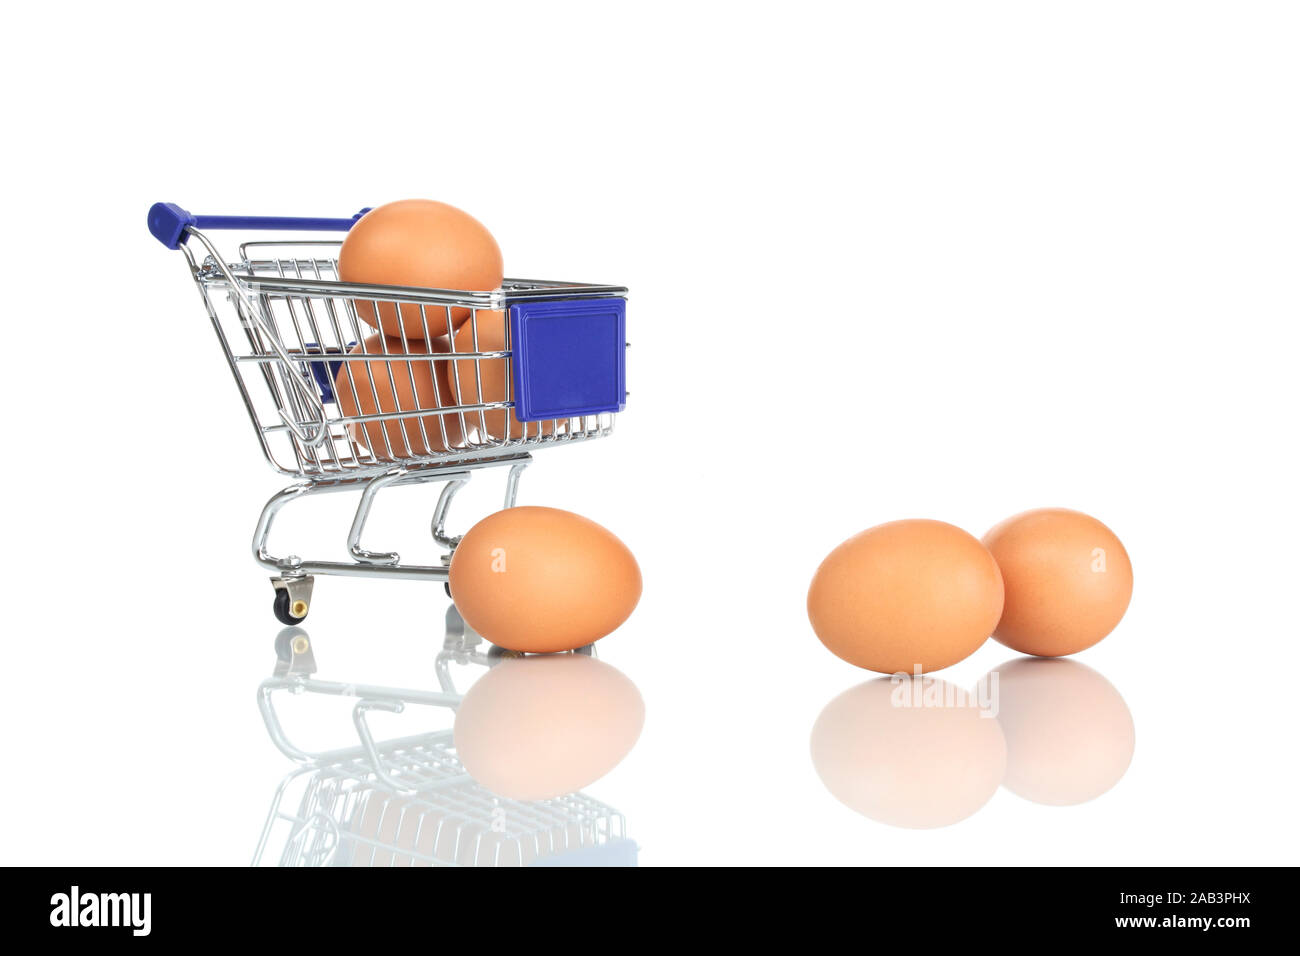 Einkaufswagen und Eier Foto Stock